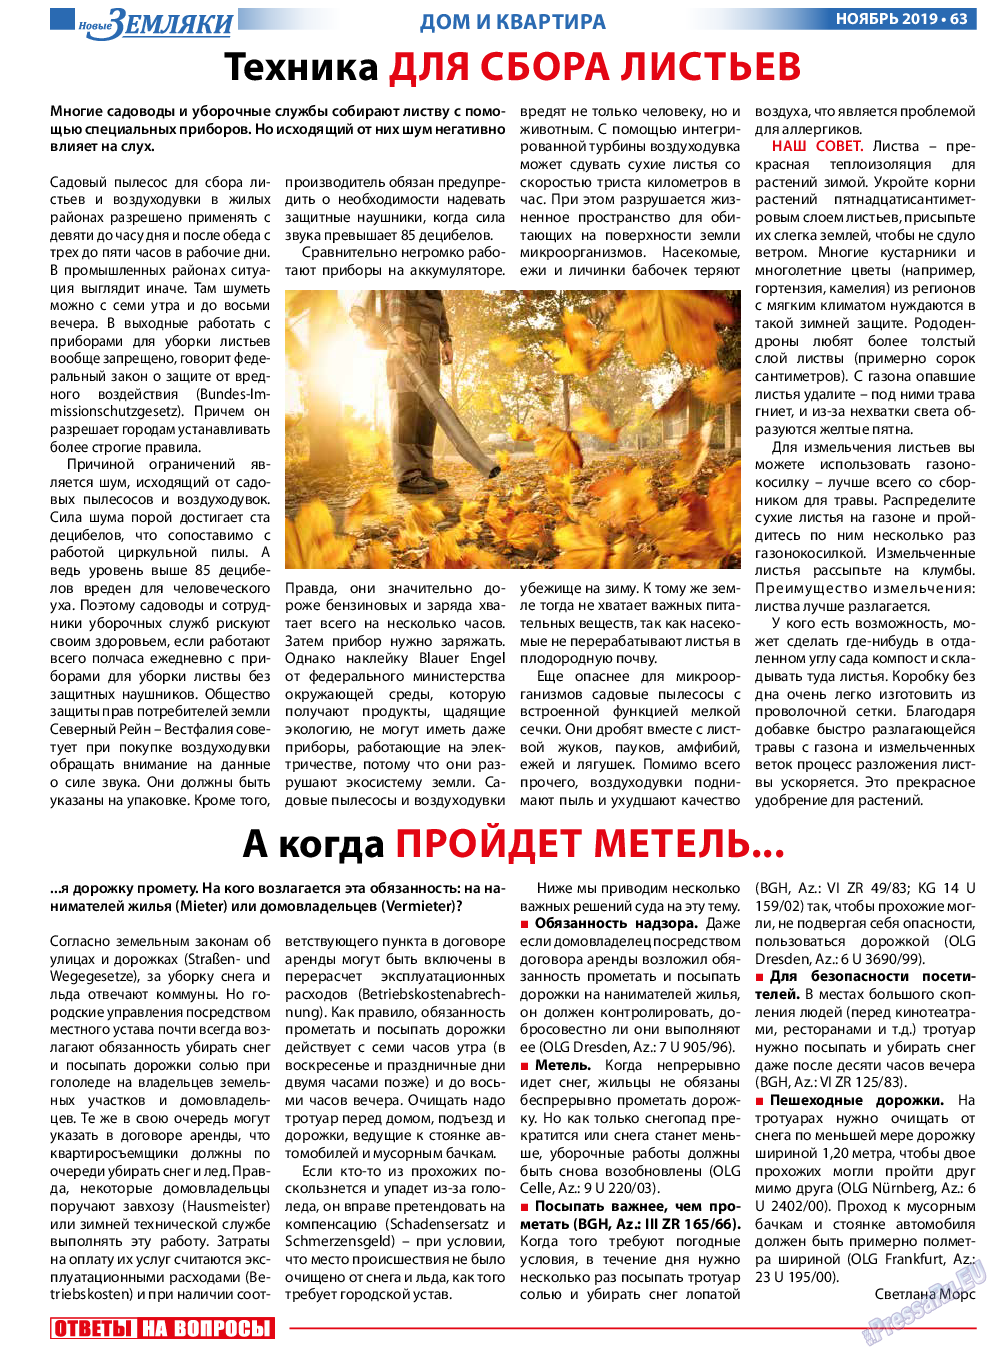 Новые Земляки, газета. 2019 №11 стр.63